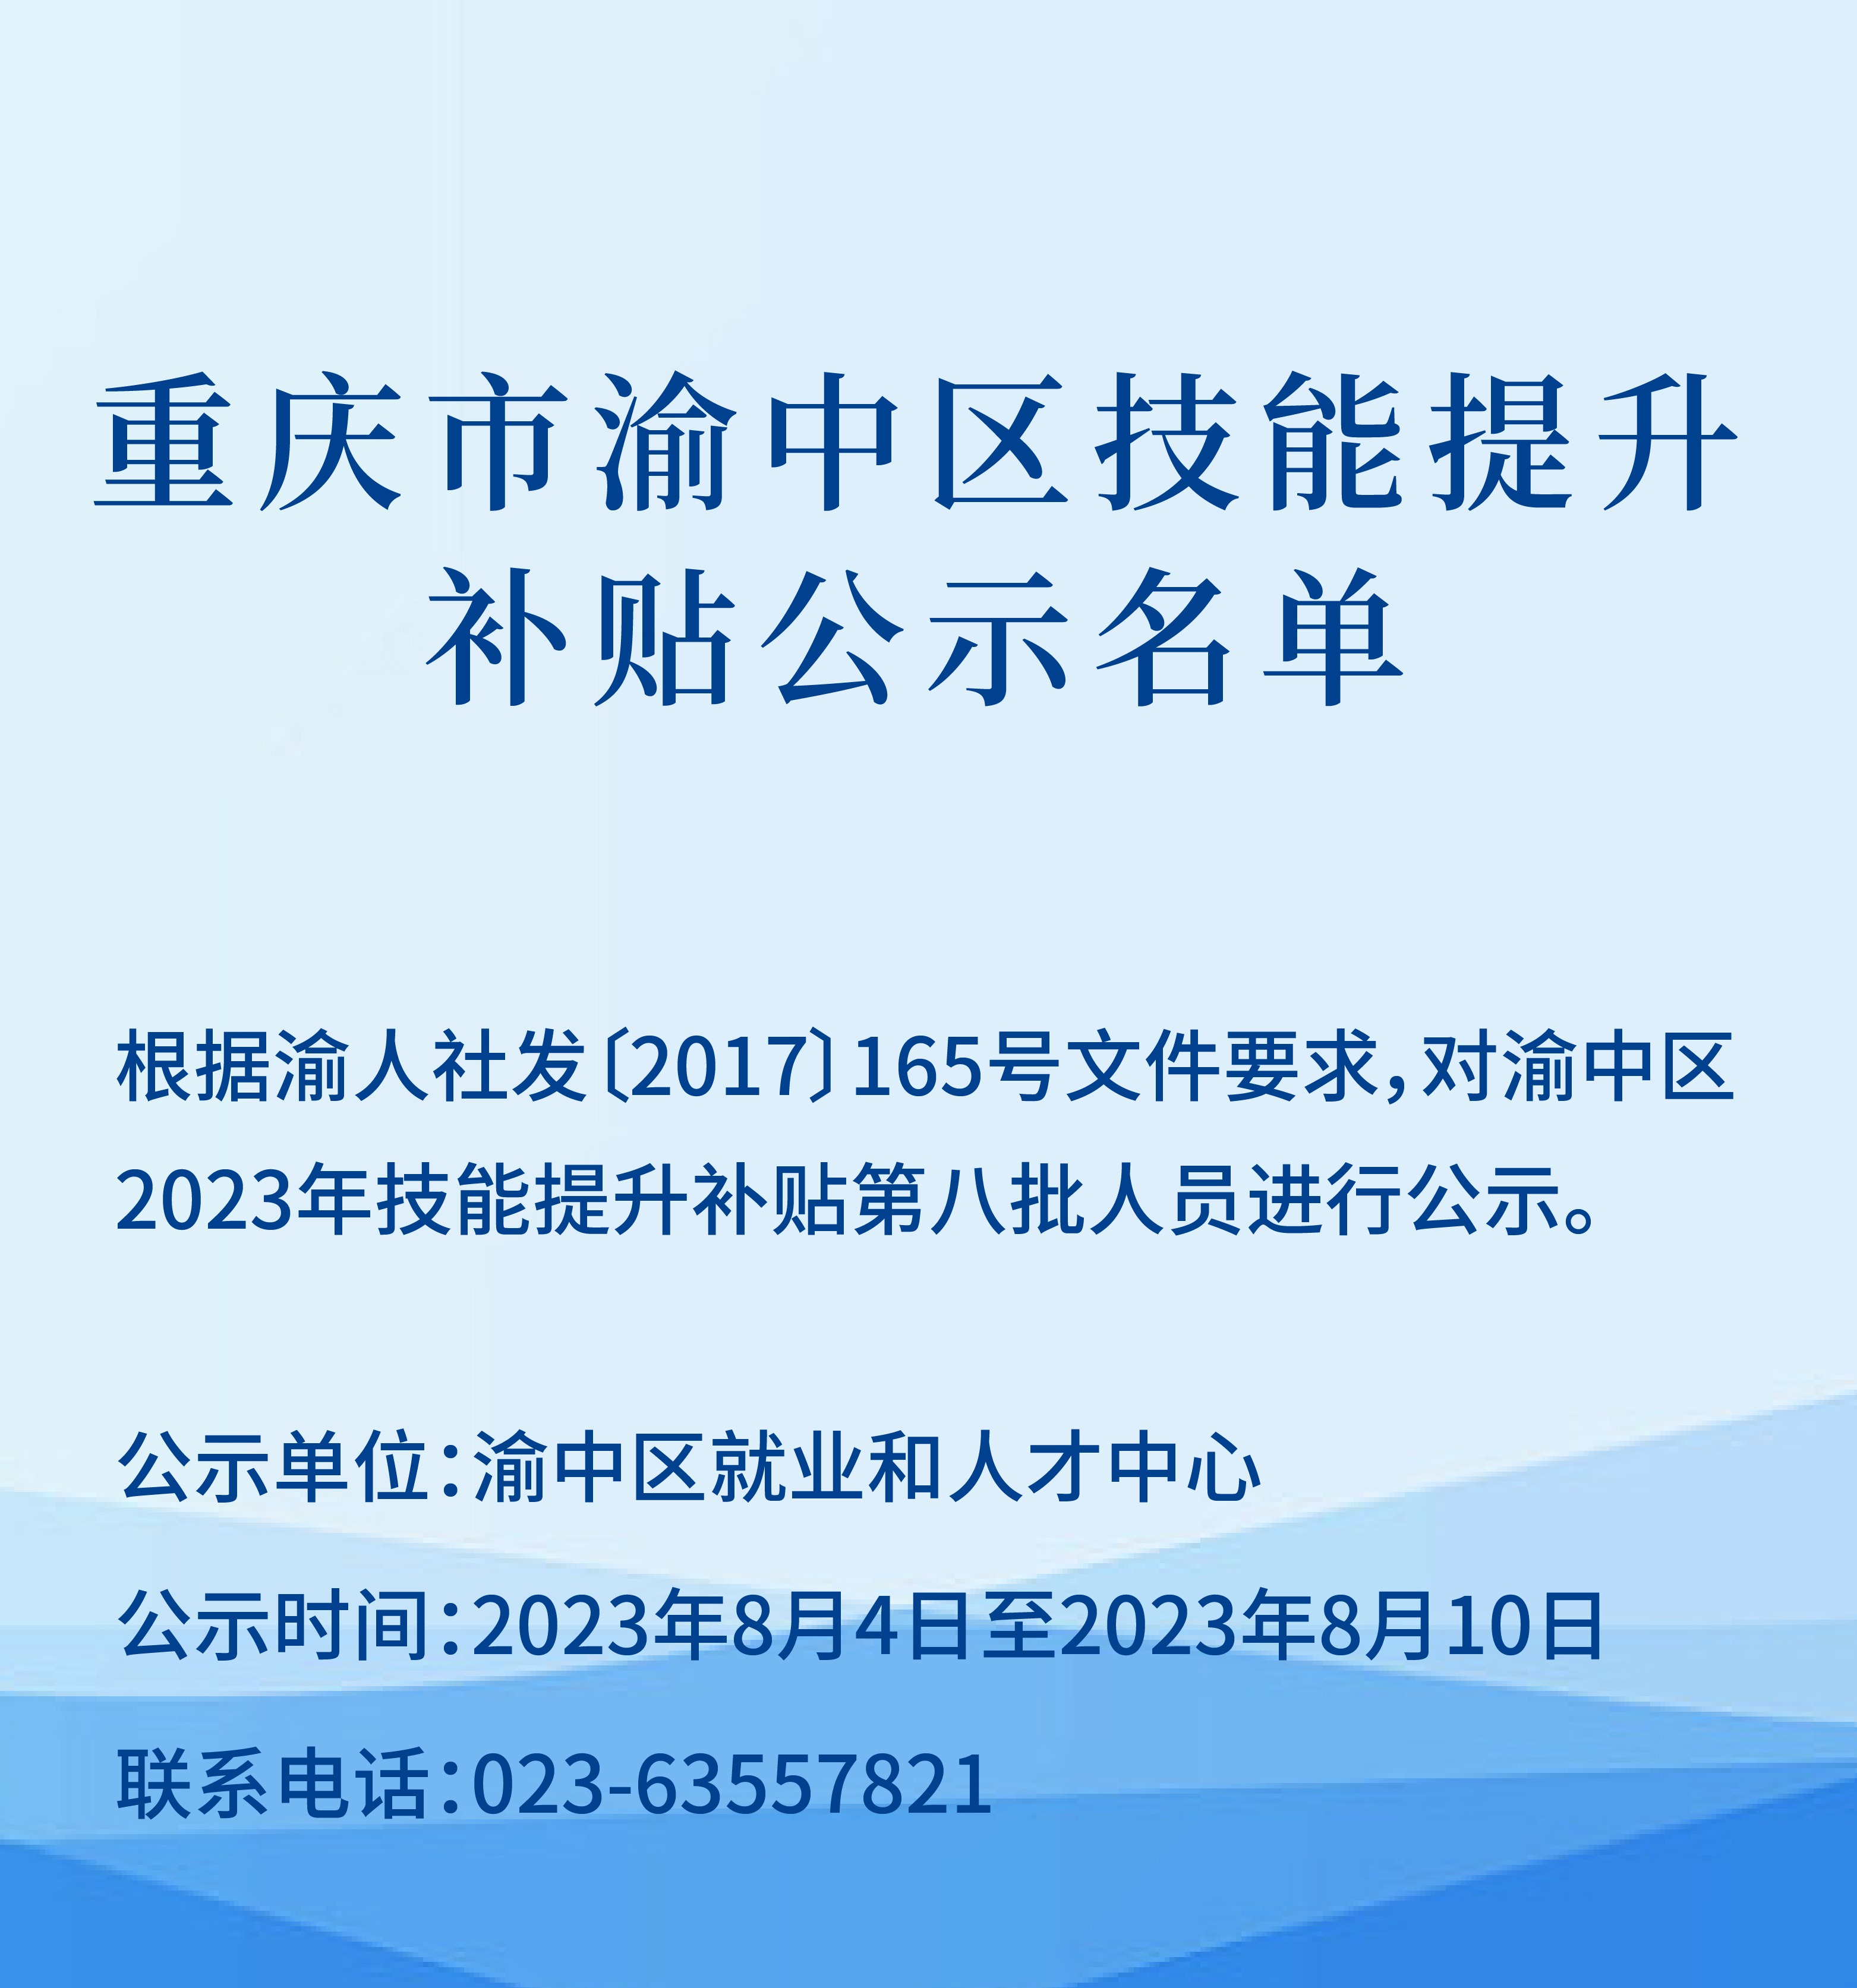 重庆市渝中区技能提升补贴公示名单_画板 1_画板 1.jpg